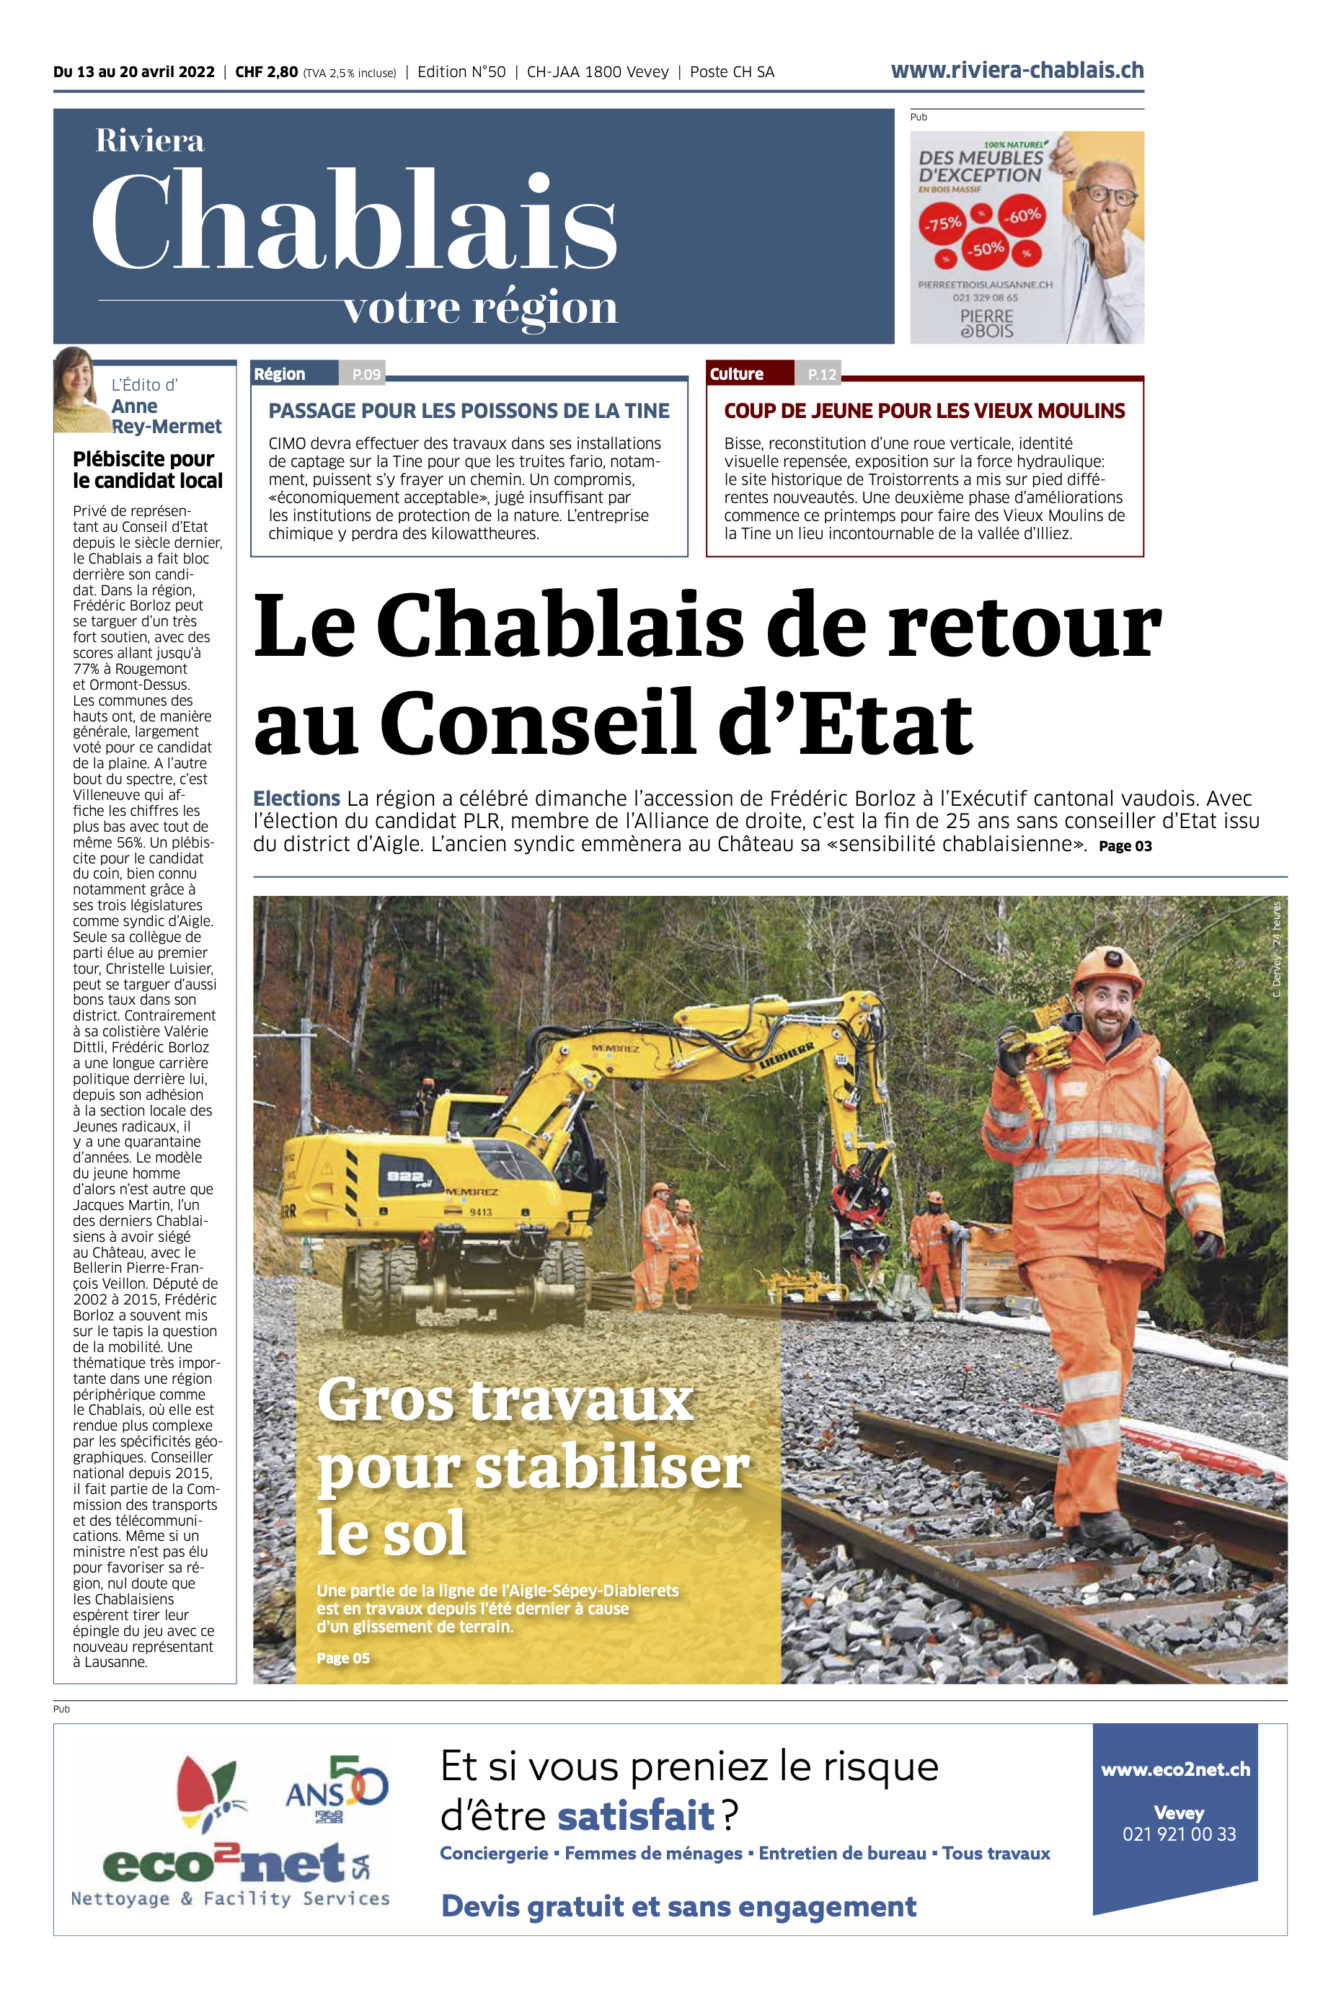 Journal Chablais n° 50 ©Dessin de Gilles,, pour l'article sur Frédéric Borloz, Le Chablais de retour au Conseil d’Etat“ du 13 avril 2022 page 1